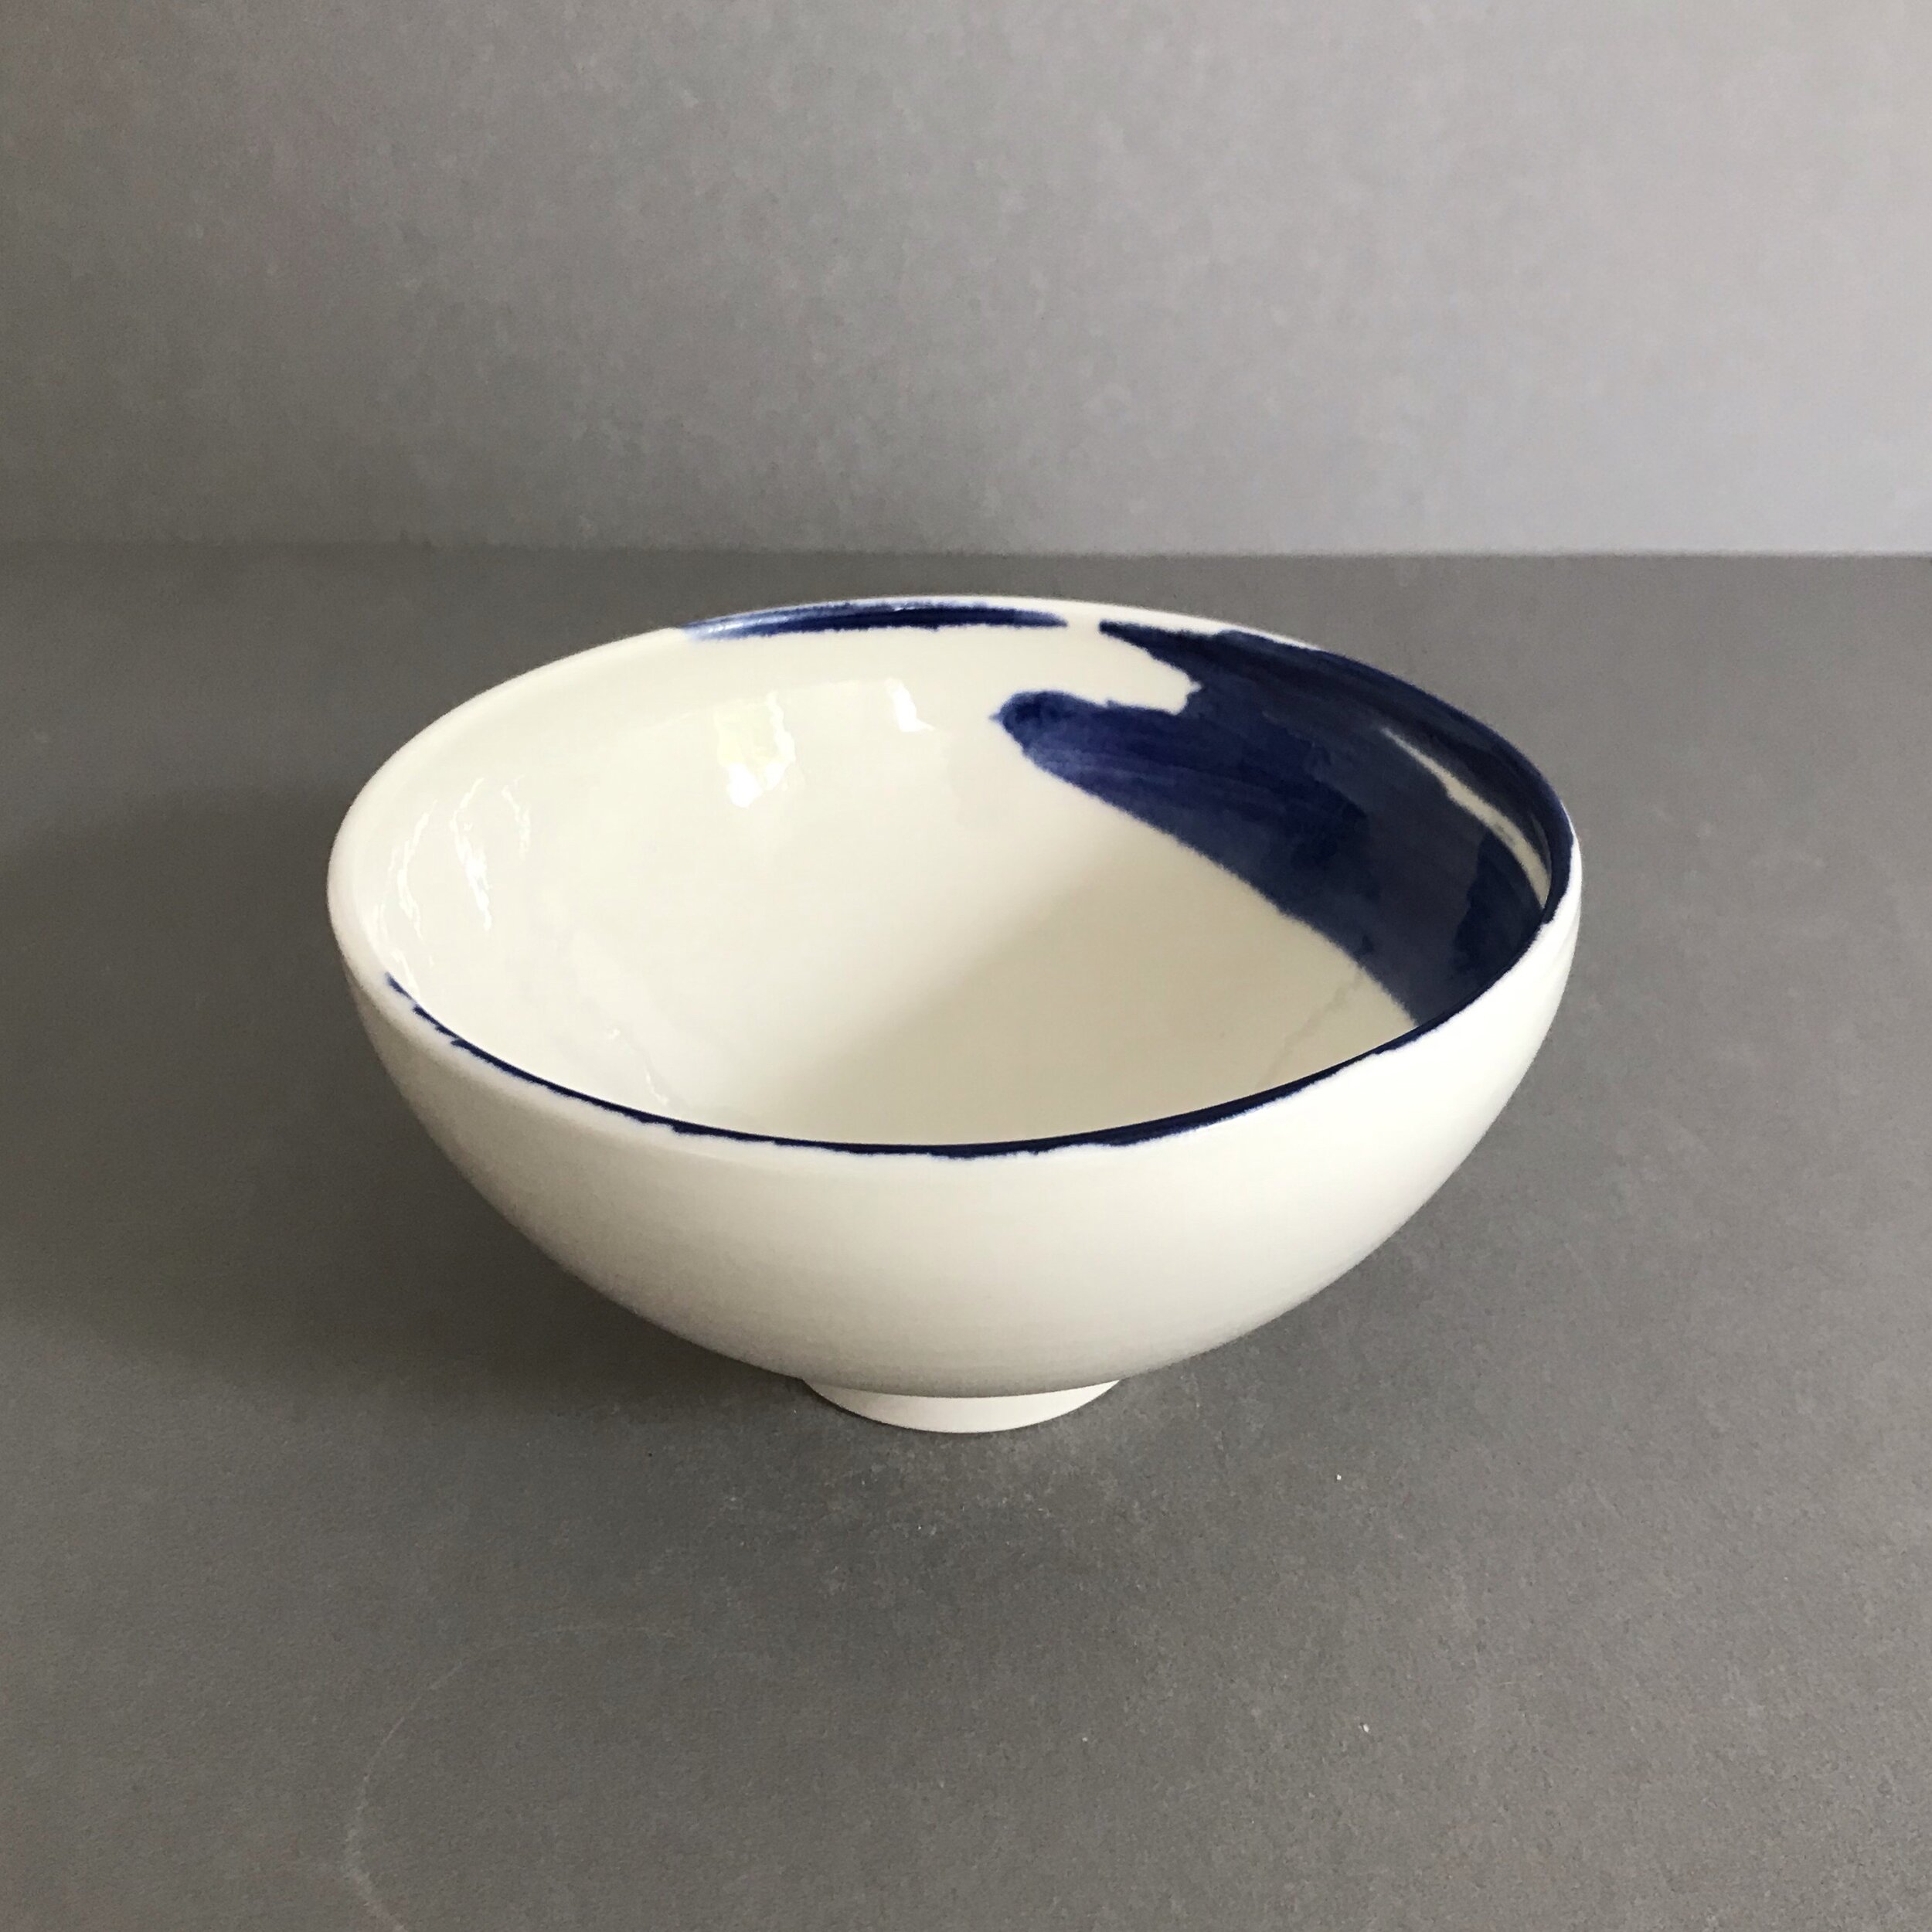 tom-kemp-porcelain-bowl-2.jpg